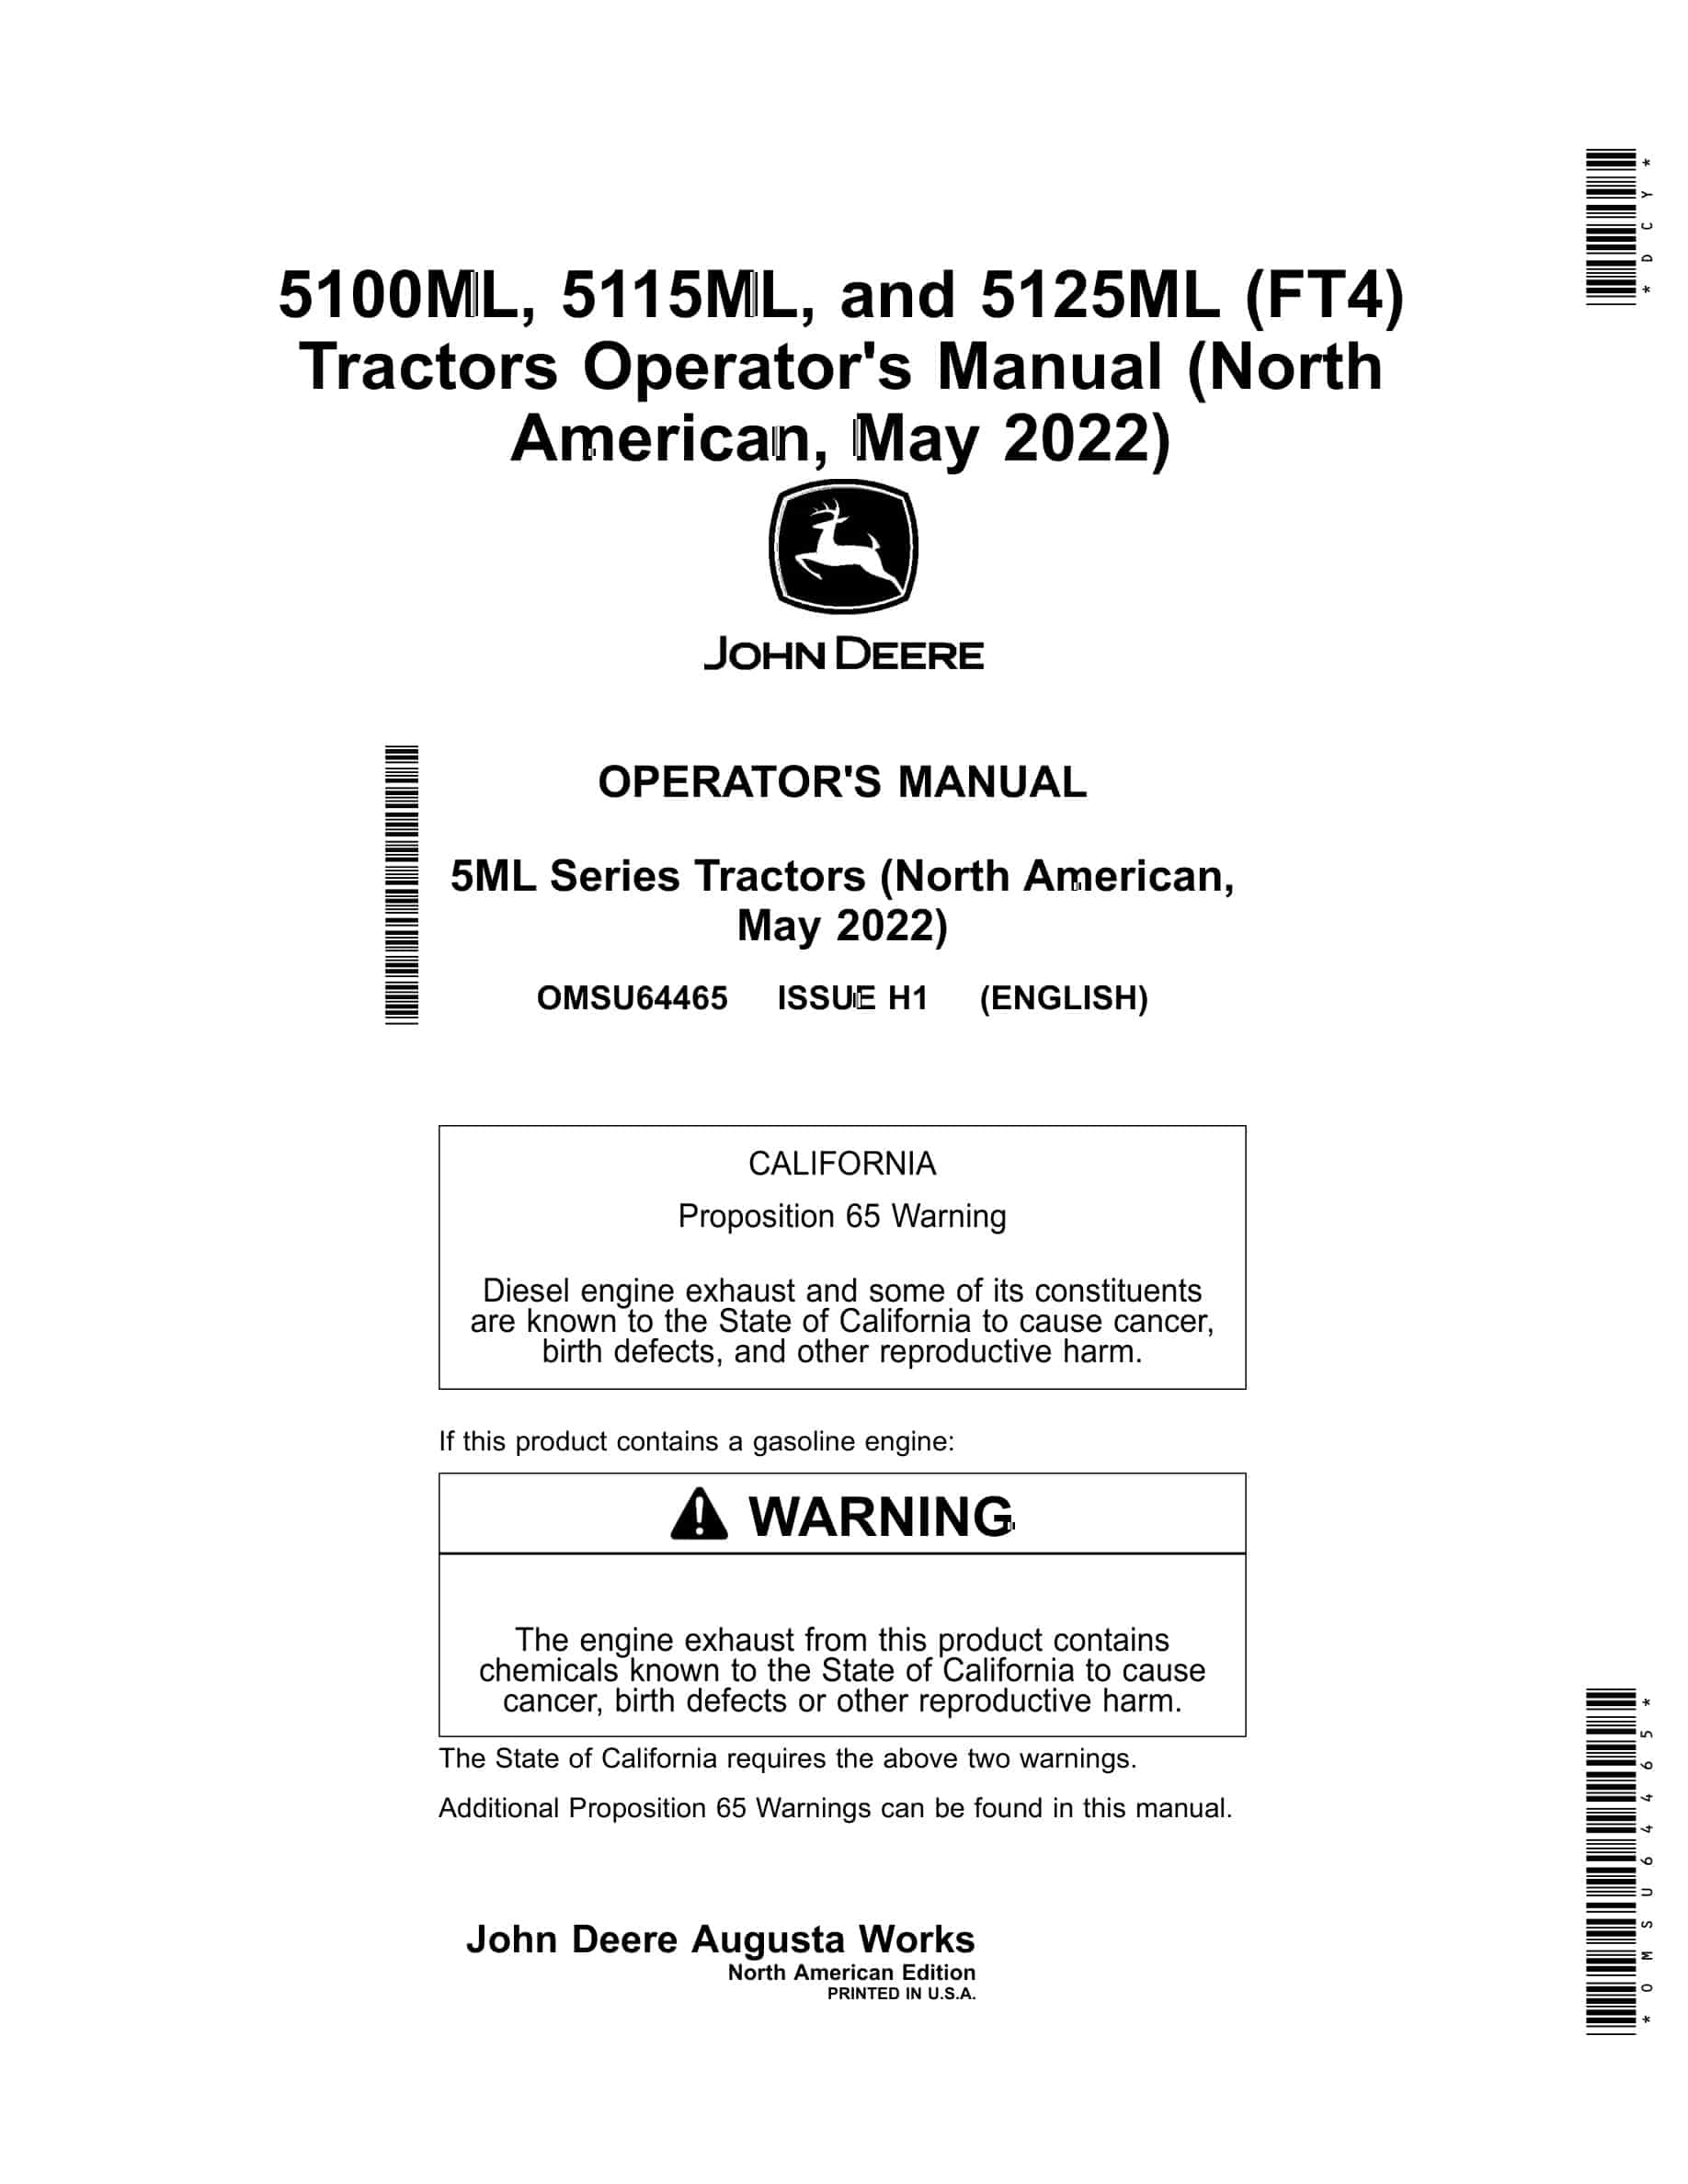 John Deere 5100ML, 5115ML, and 5125ML (FT4) Tractor Operator Manual OMSU64465-1